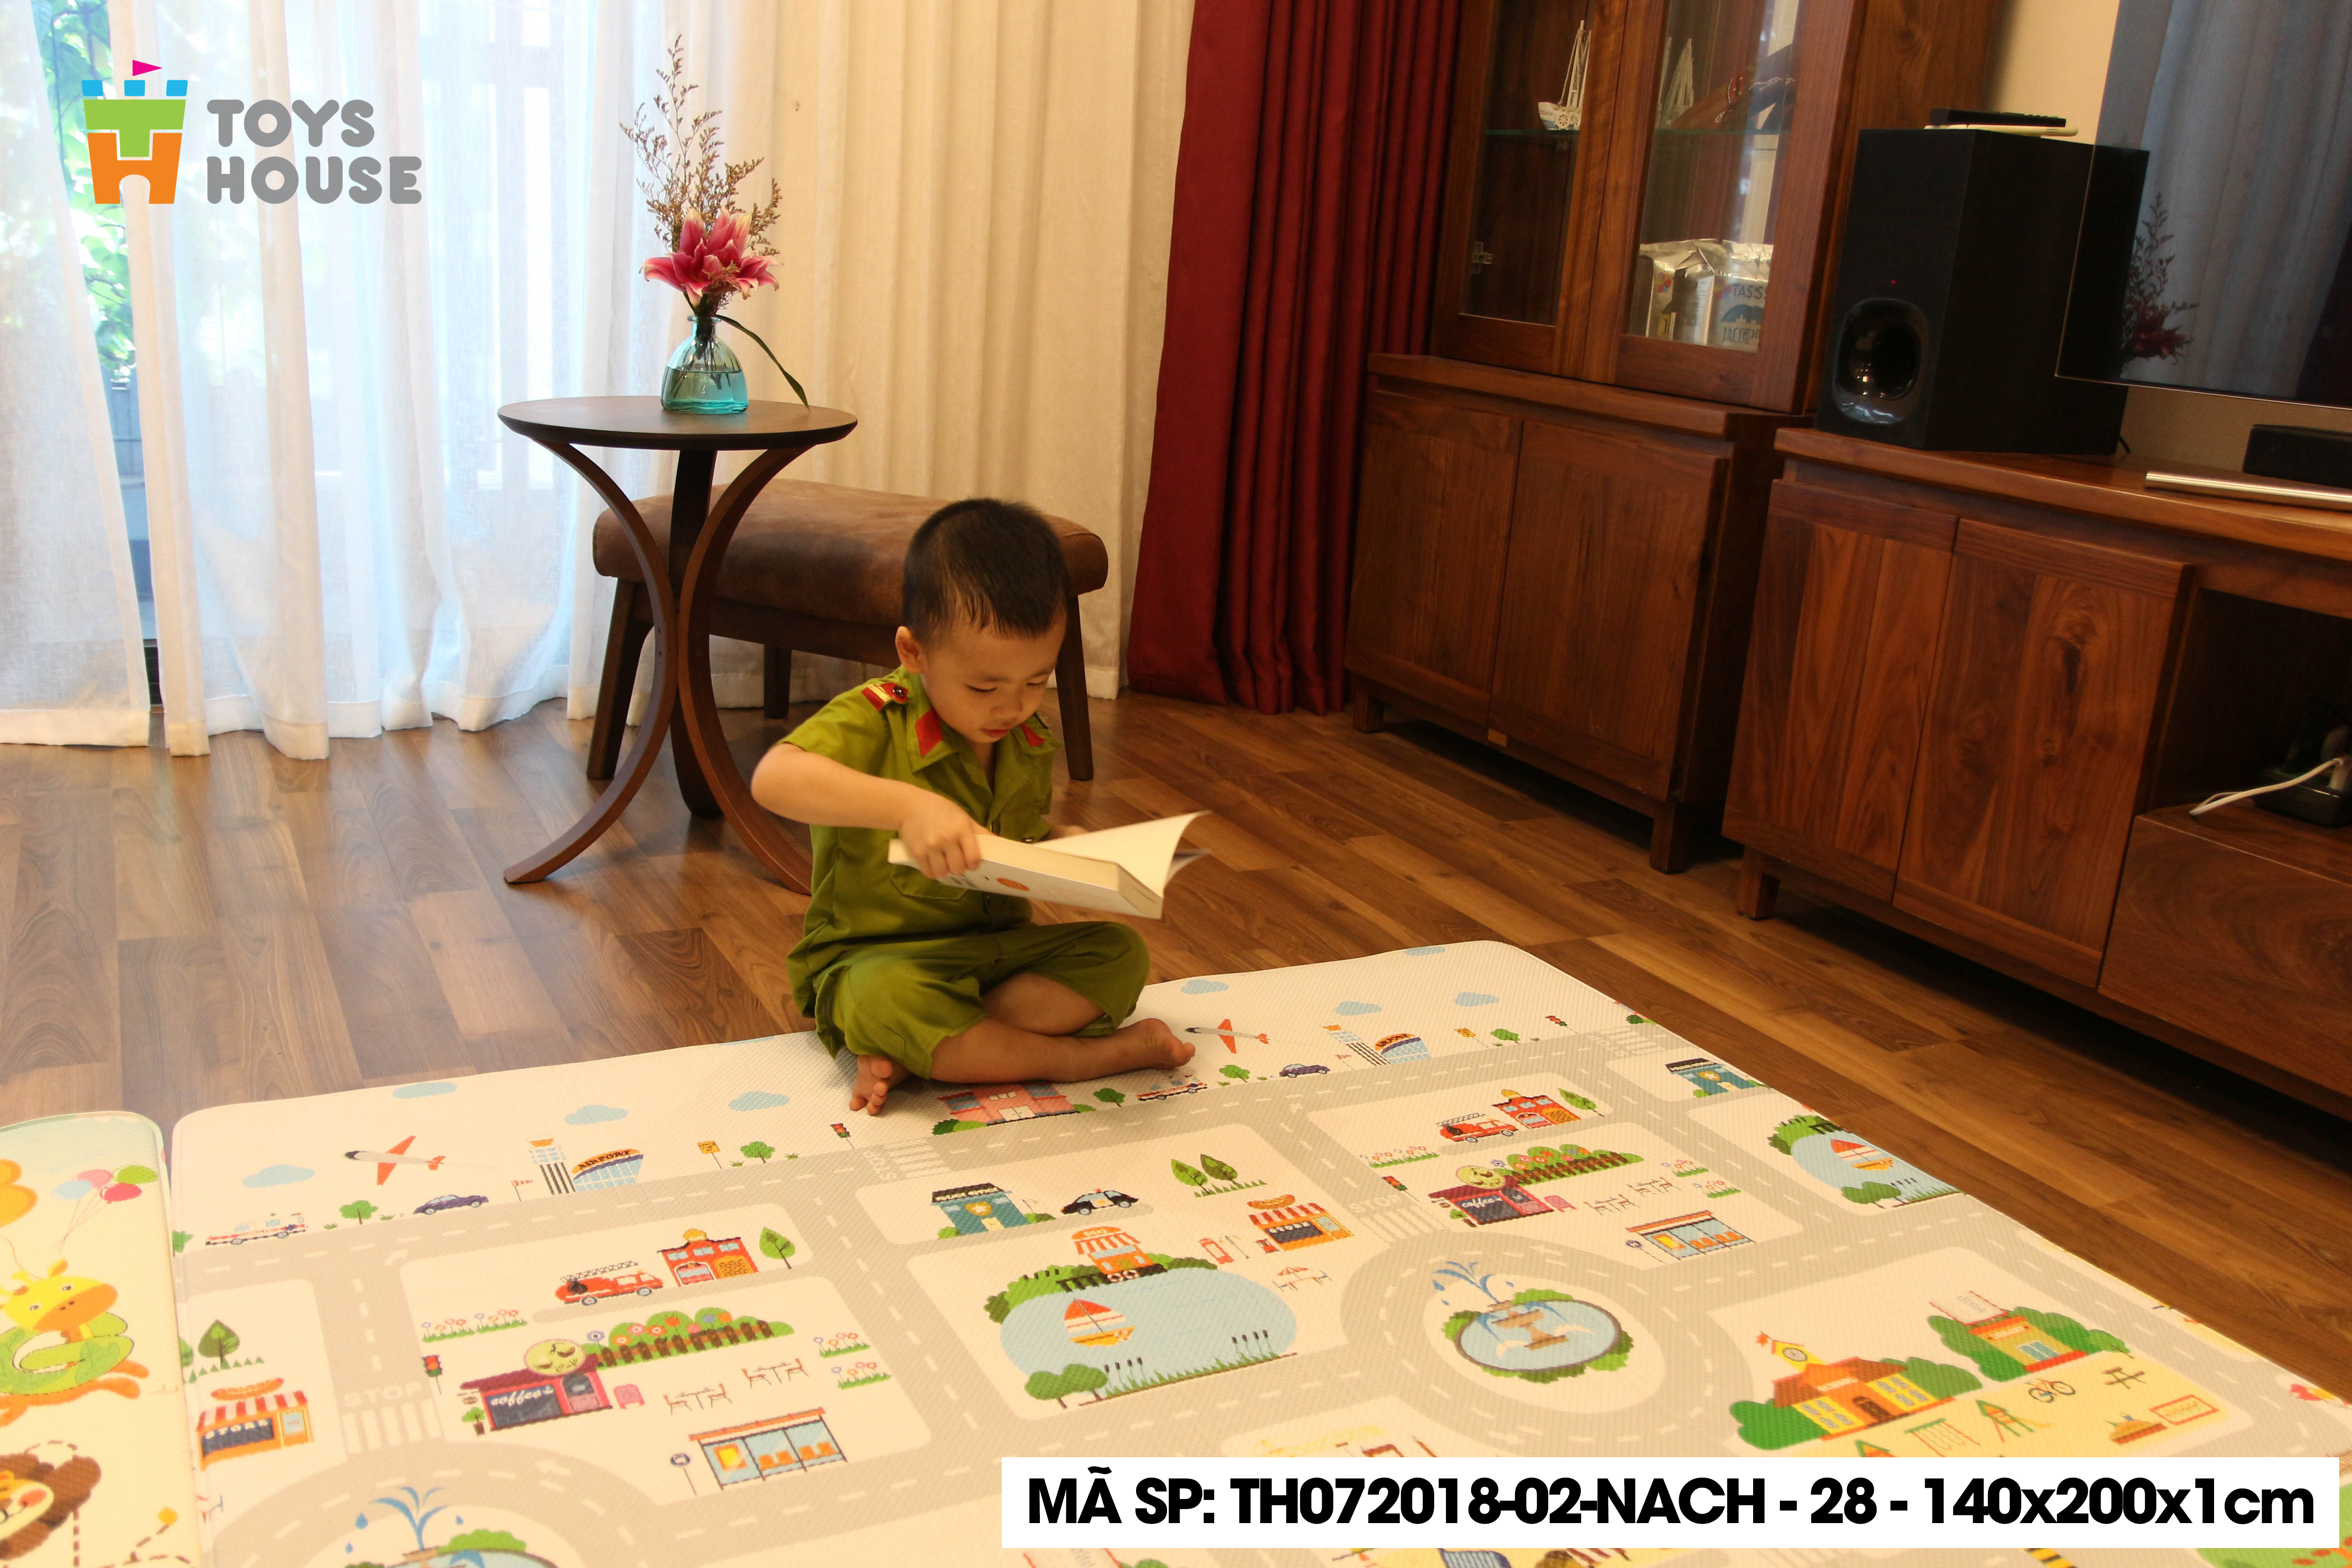 Thảm nằm chơi cho trẻ em Silicon Toys House TH072018-01-NACH-28, chất liệu cao cấp khác với sản phẩm Silicon trôi nổi trên thị trường